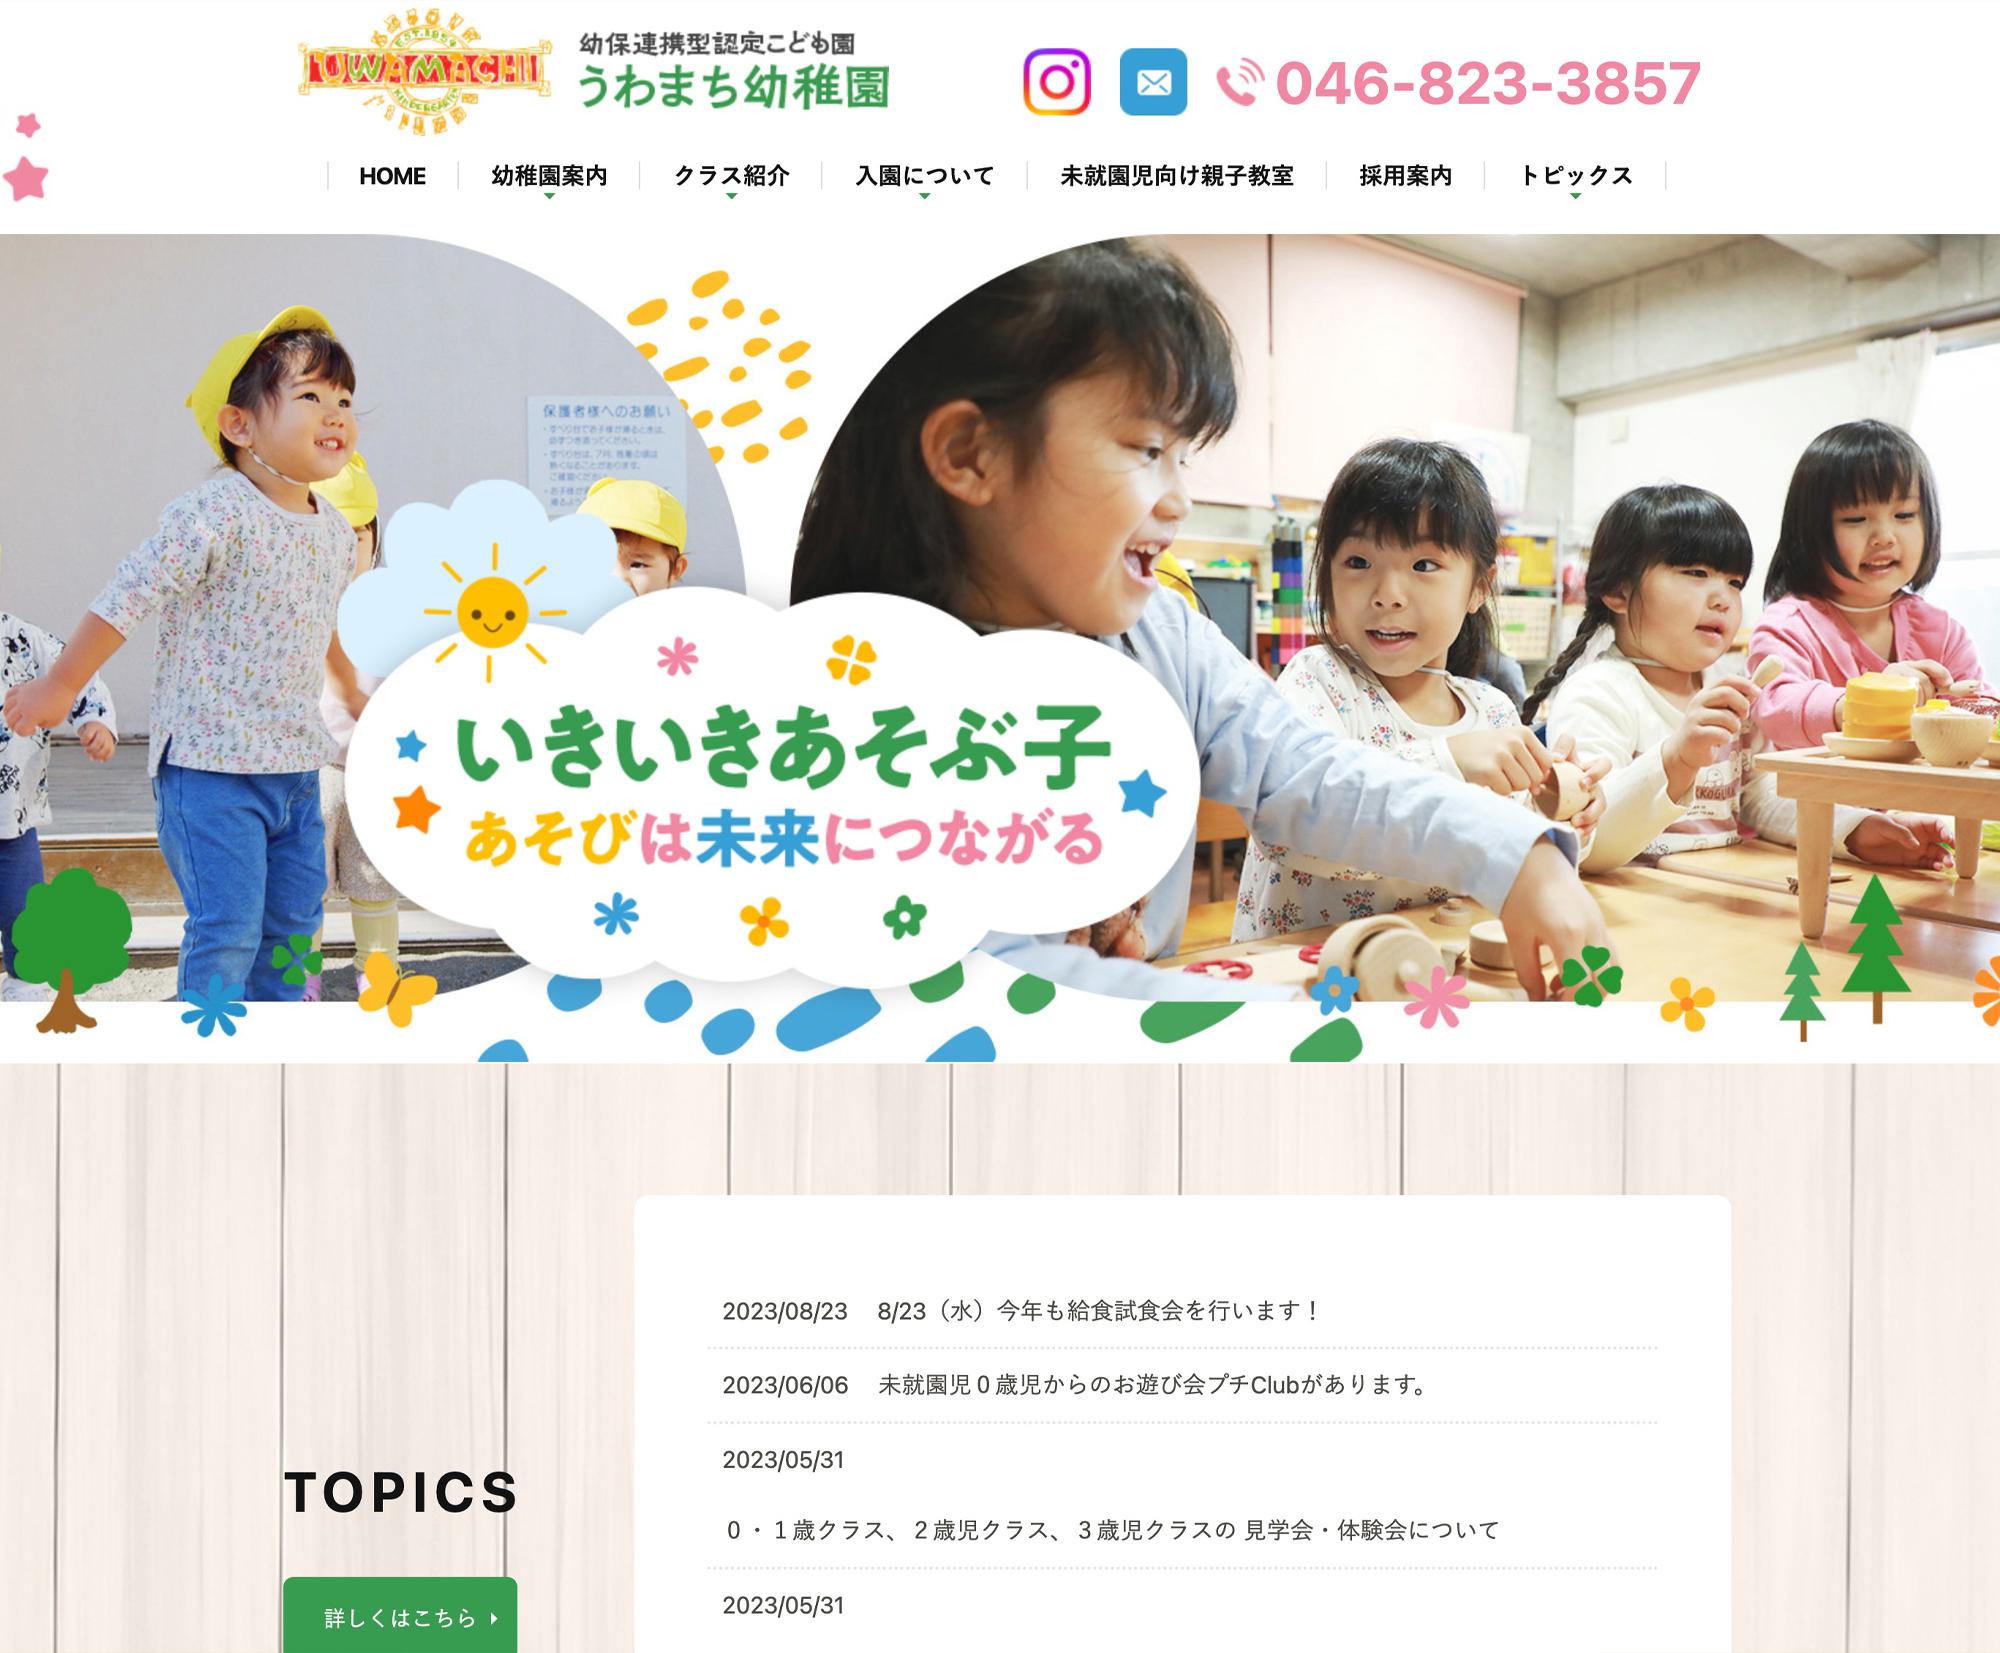 幼保連携型認定こども園うわまち幼稚園 / 神奈川県横須賀市